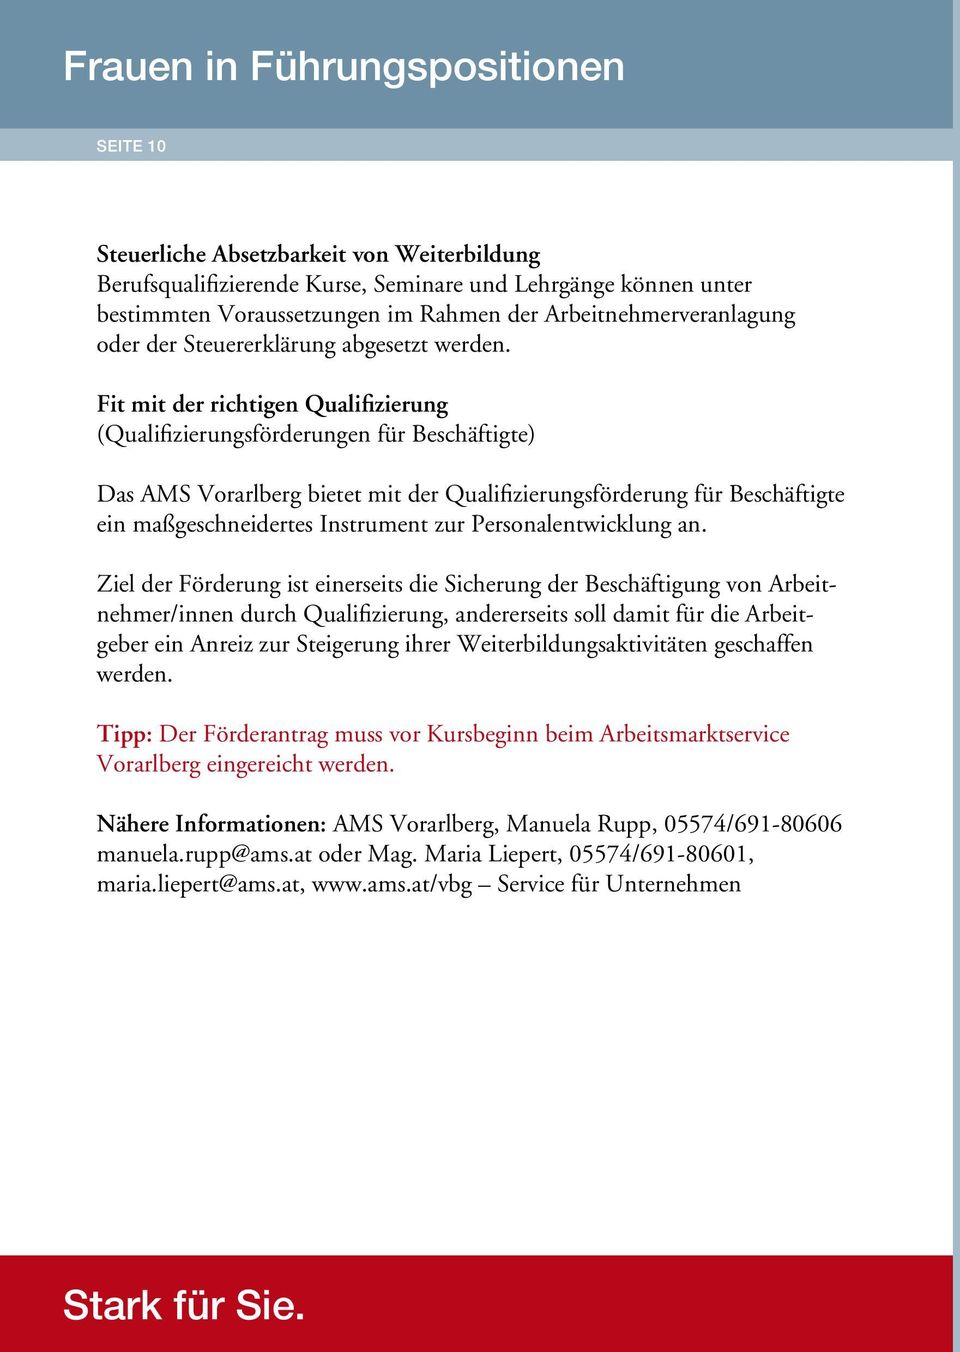 Fit mit der richtigen Qualifizierung (Qualifizierungsförderungen für Beschäftigte) Das AMS Vorarlberg bietet mit der Qualifizierungsförderung für Beschäftigte ein maßgeschneidertes Instrument zur